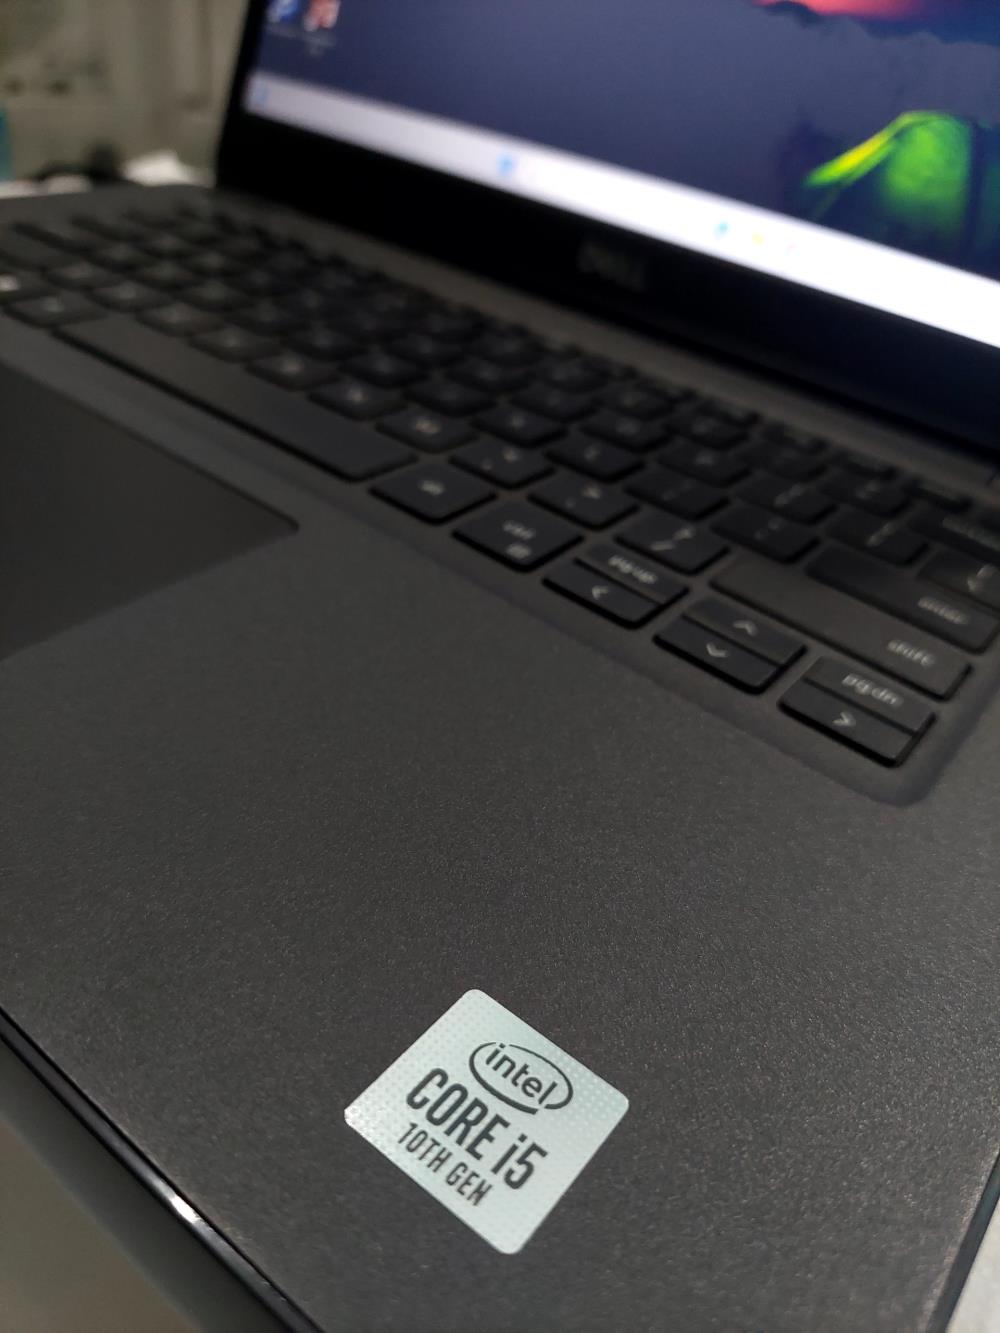 SUPER SALE: Laptop Dell Chính Hãng - Giá Cực Sốc Chỉ Từ 4 Triệu!1434239